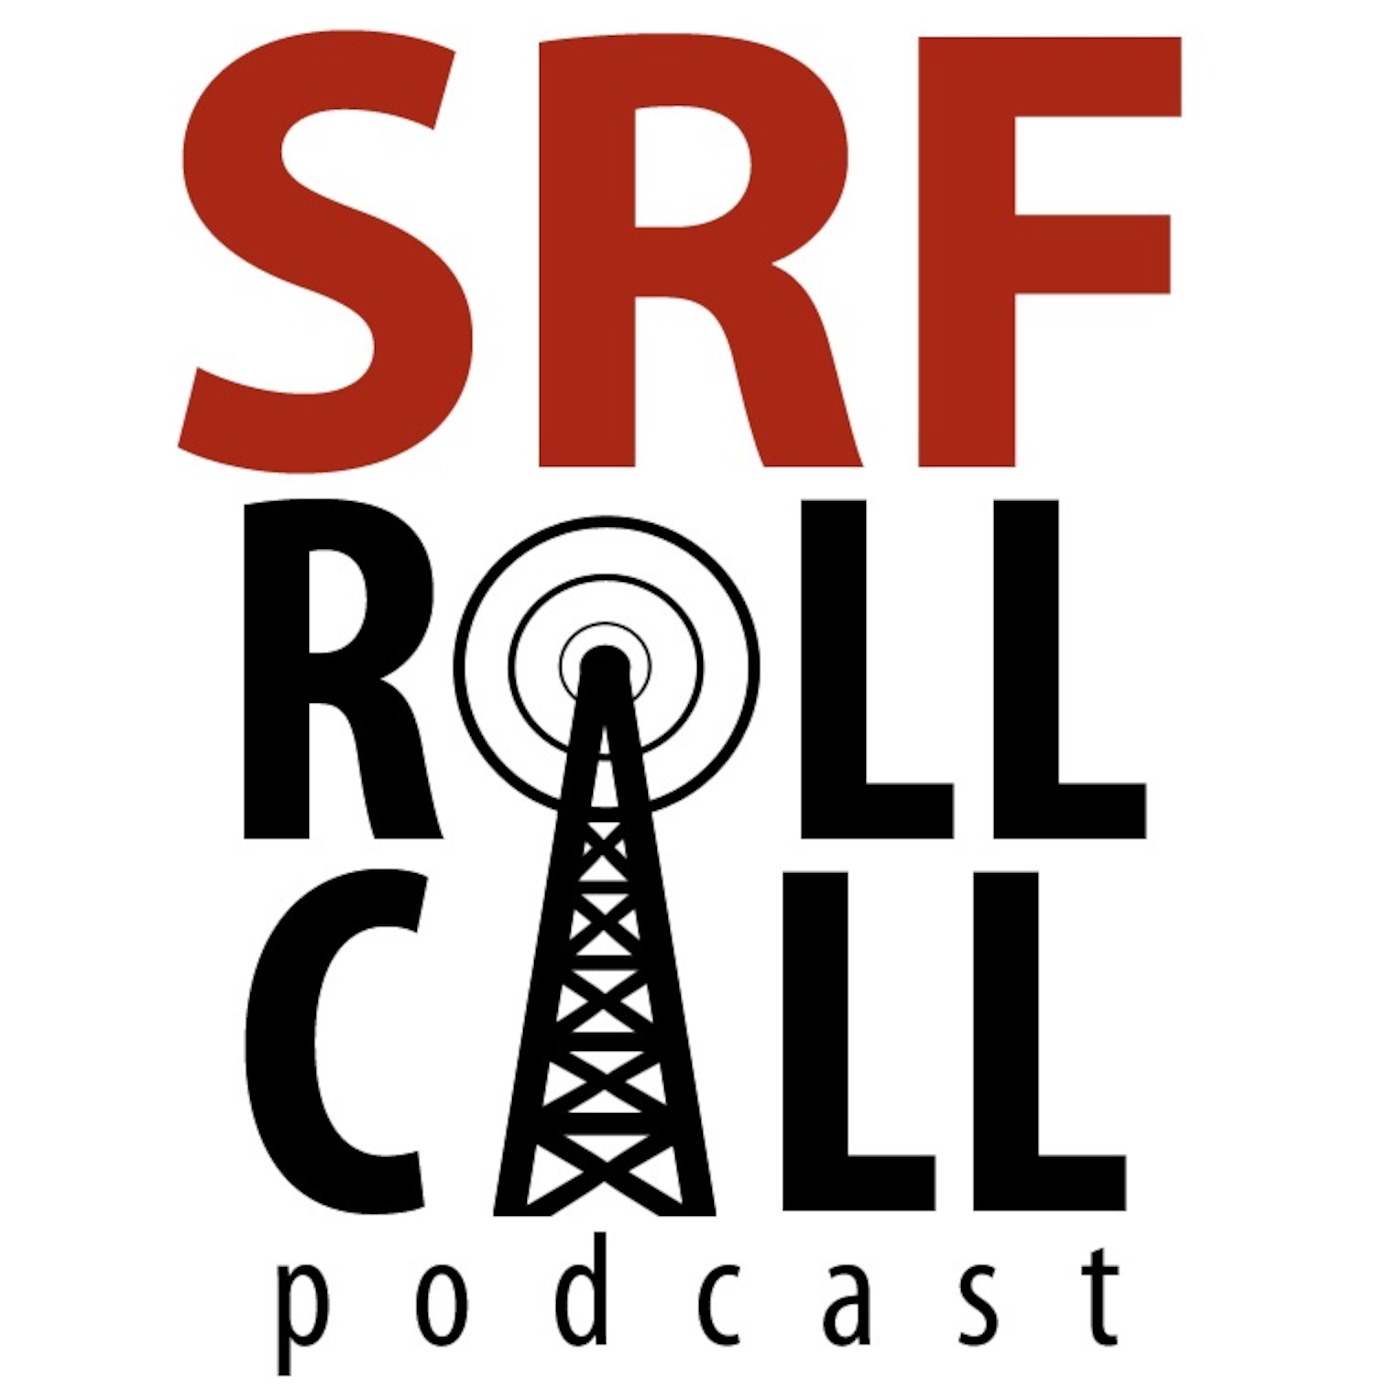 SRF Roll Call